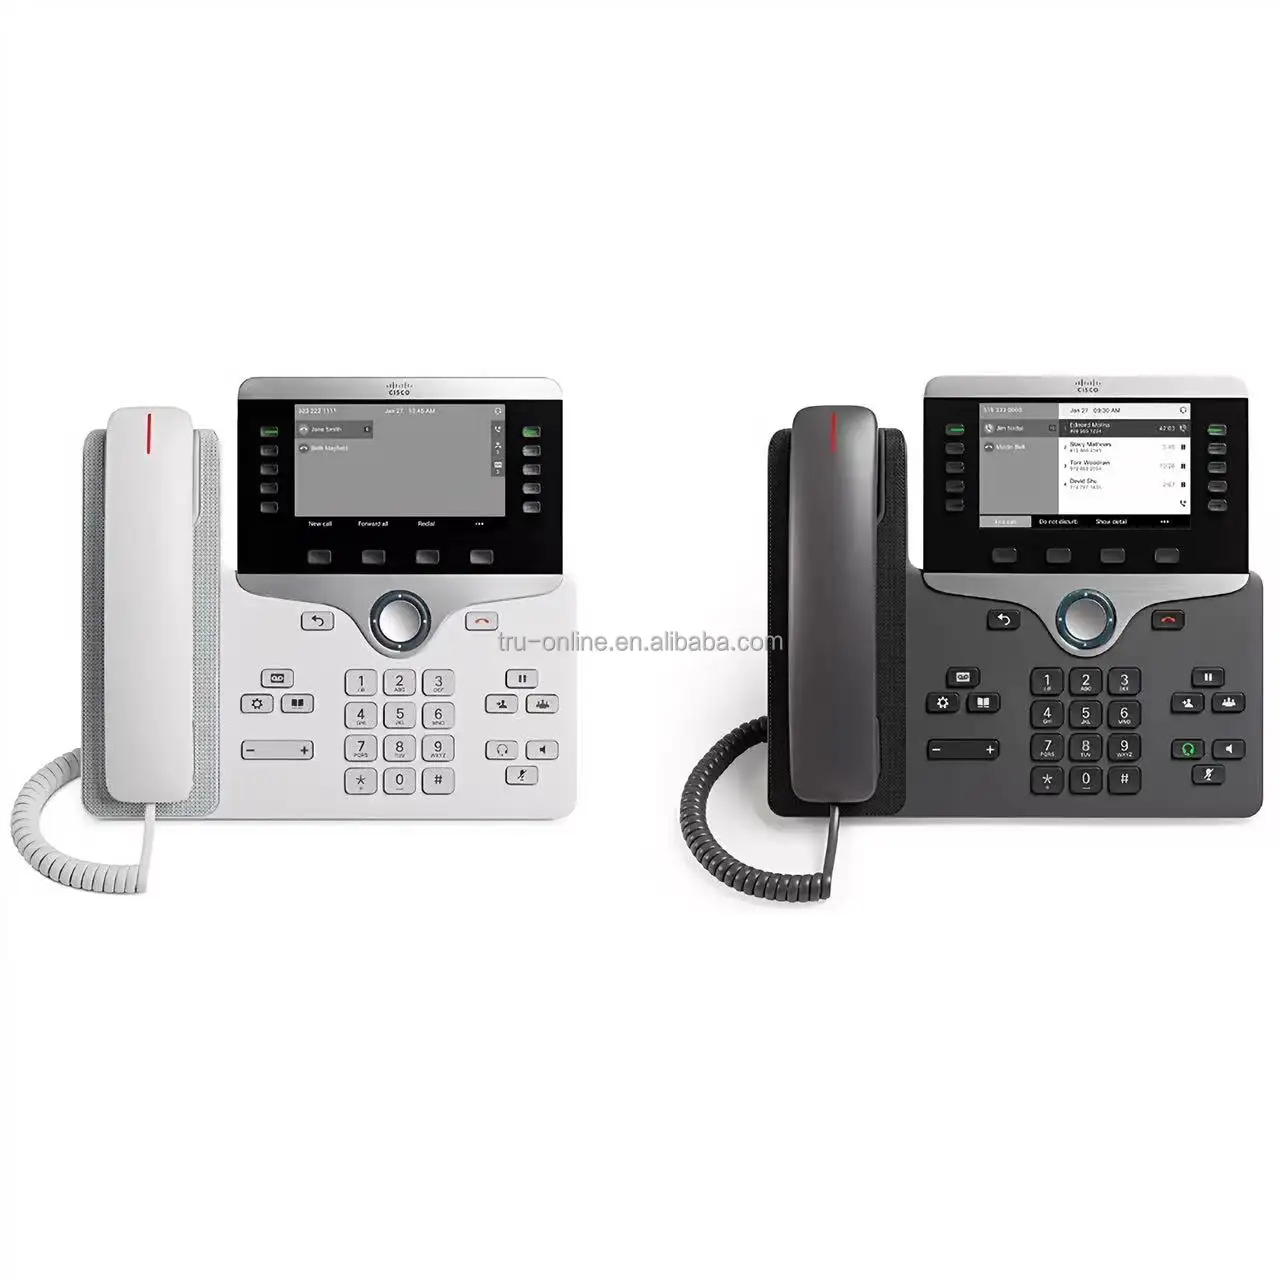 IP Phone 8811ซีรีส์8800ซีรี่ย์โทรศัพท์ IP จอแสดงผลแบบไวด์สกรีนสีเทาคุณภาพสูงการสื่อสารด้วยเสียง CP-8811-K9 =